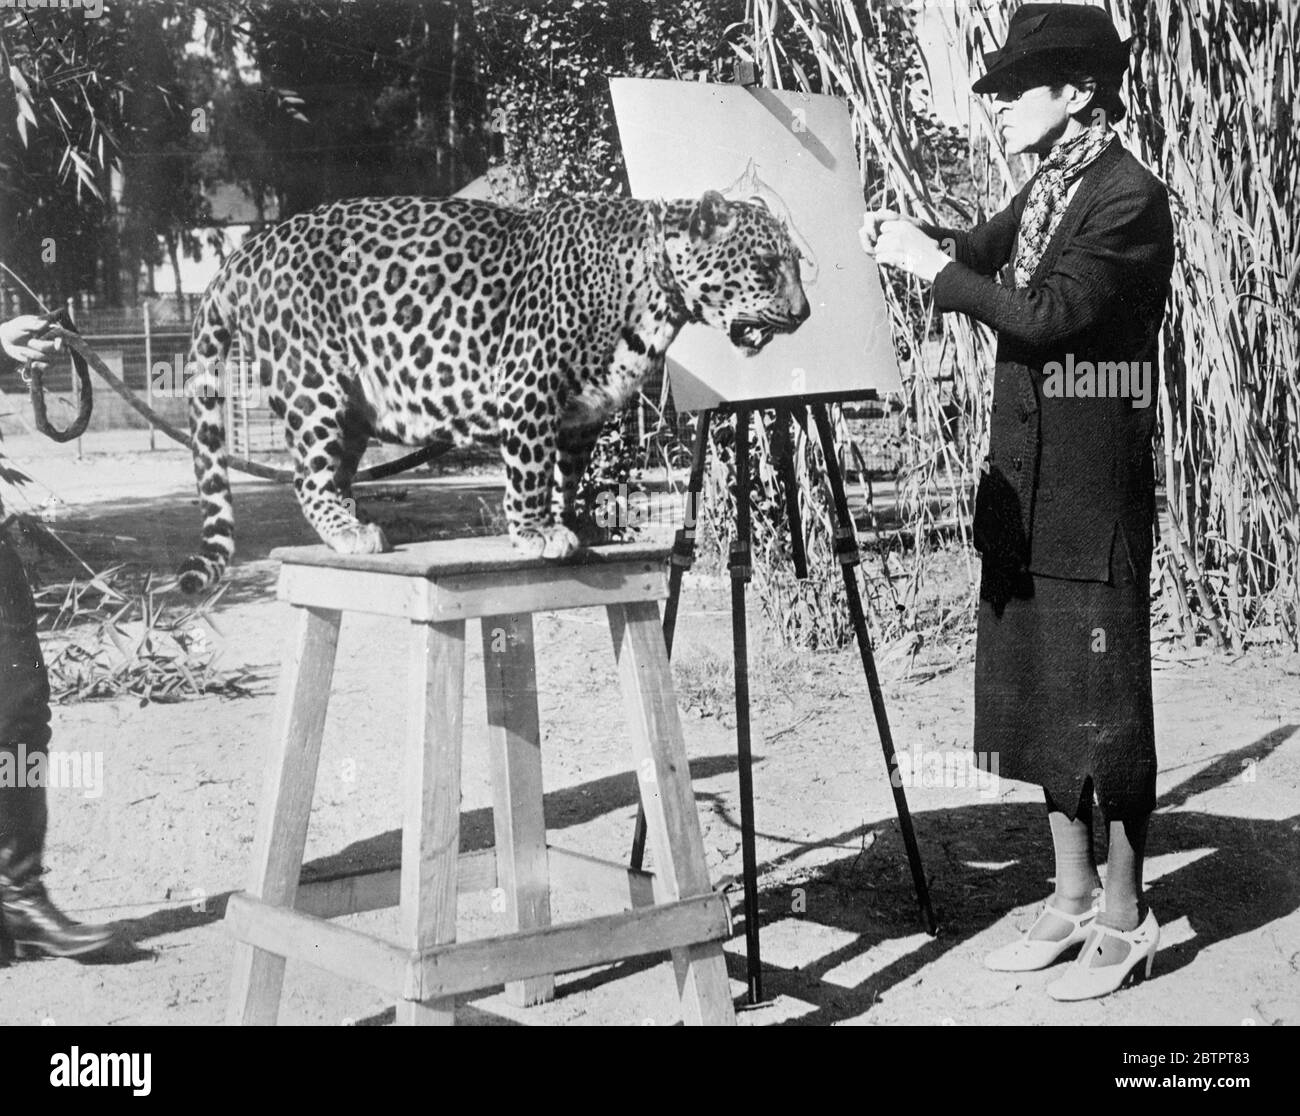 Gefährliche Nahaufnahme! London Künstler Skizzen im California Zoo. Miss Maud Earl of London berühmte Tiermalerin, kommt ihrem Thema näher und malt eine Nahaufnahme von Nissa, Hollywood Leopard, die in mehreren Filmen mitgewirkt hat, im California Zoological Park, Los Angeles, USA. Stockfoto